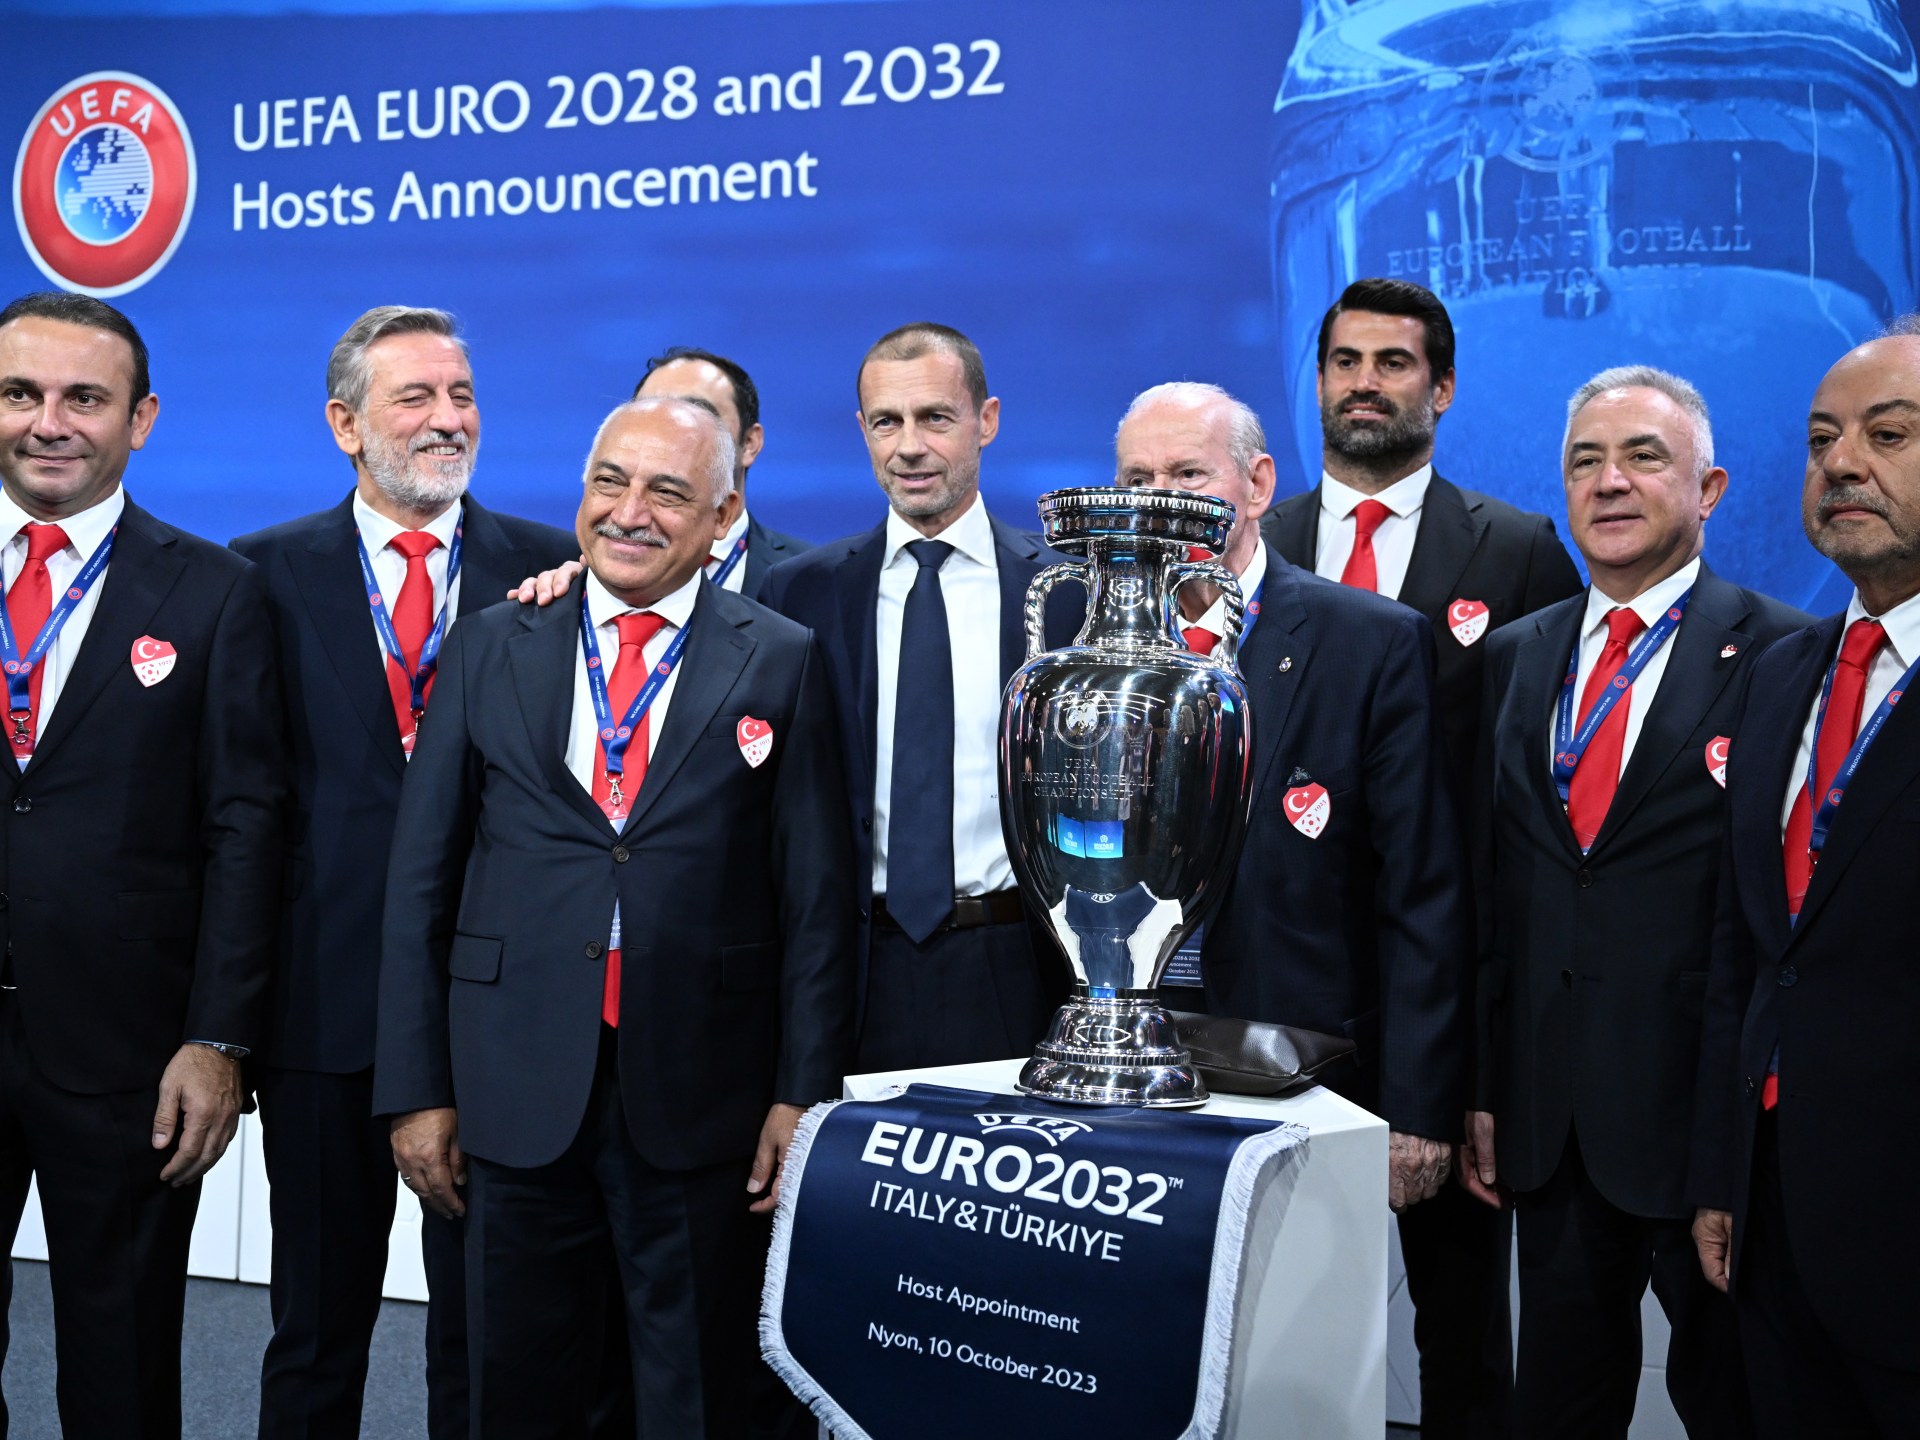 “قلب كرة القدم سينبض هنا”.. تركيا سعيدة باستضافة بطولة أوروبا 2032 | رياضة – البوكس نيوز